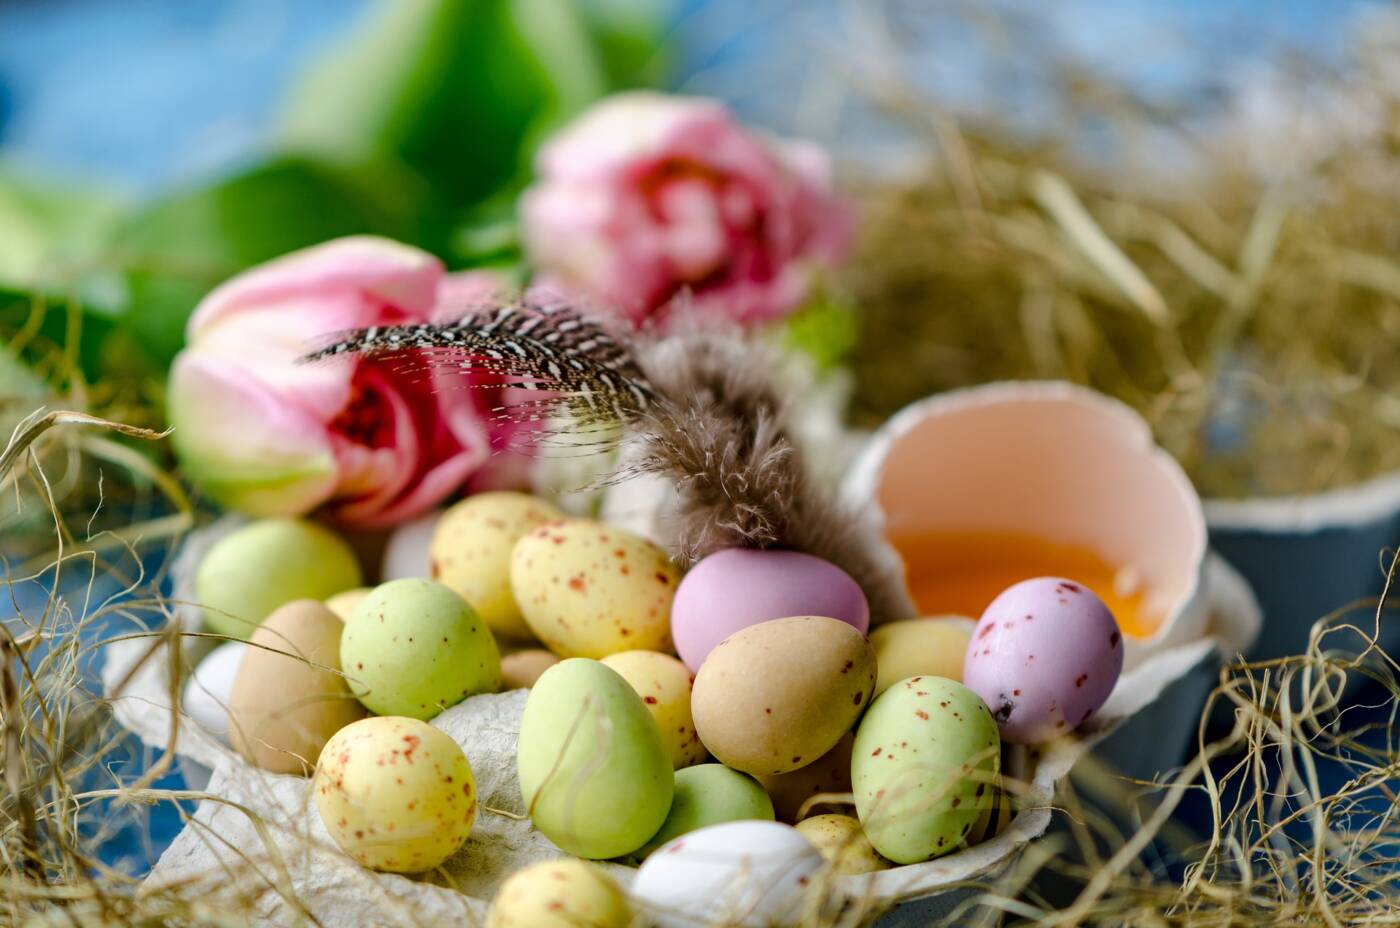 Joyeuses Pâques et bonne chasse aux œufs.